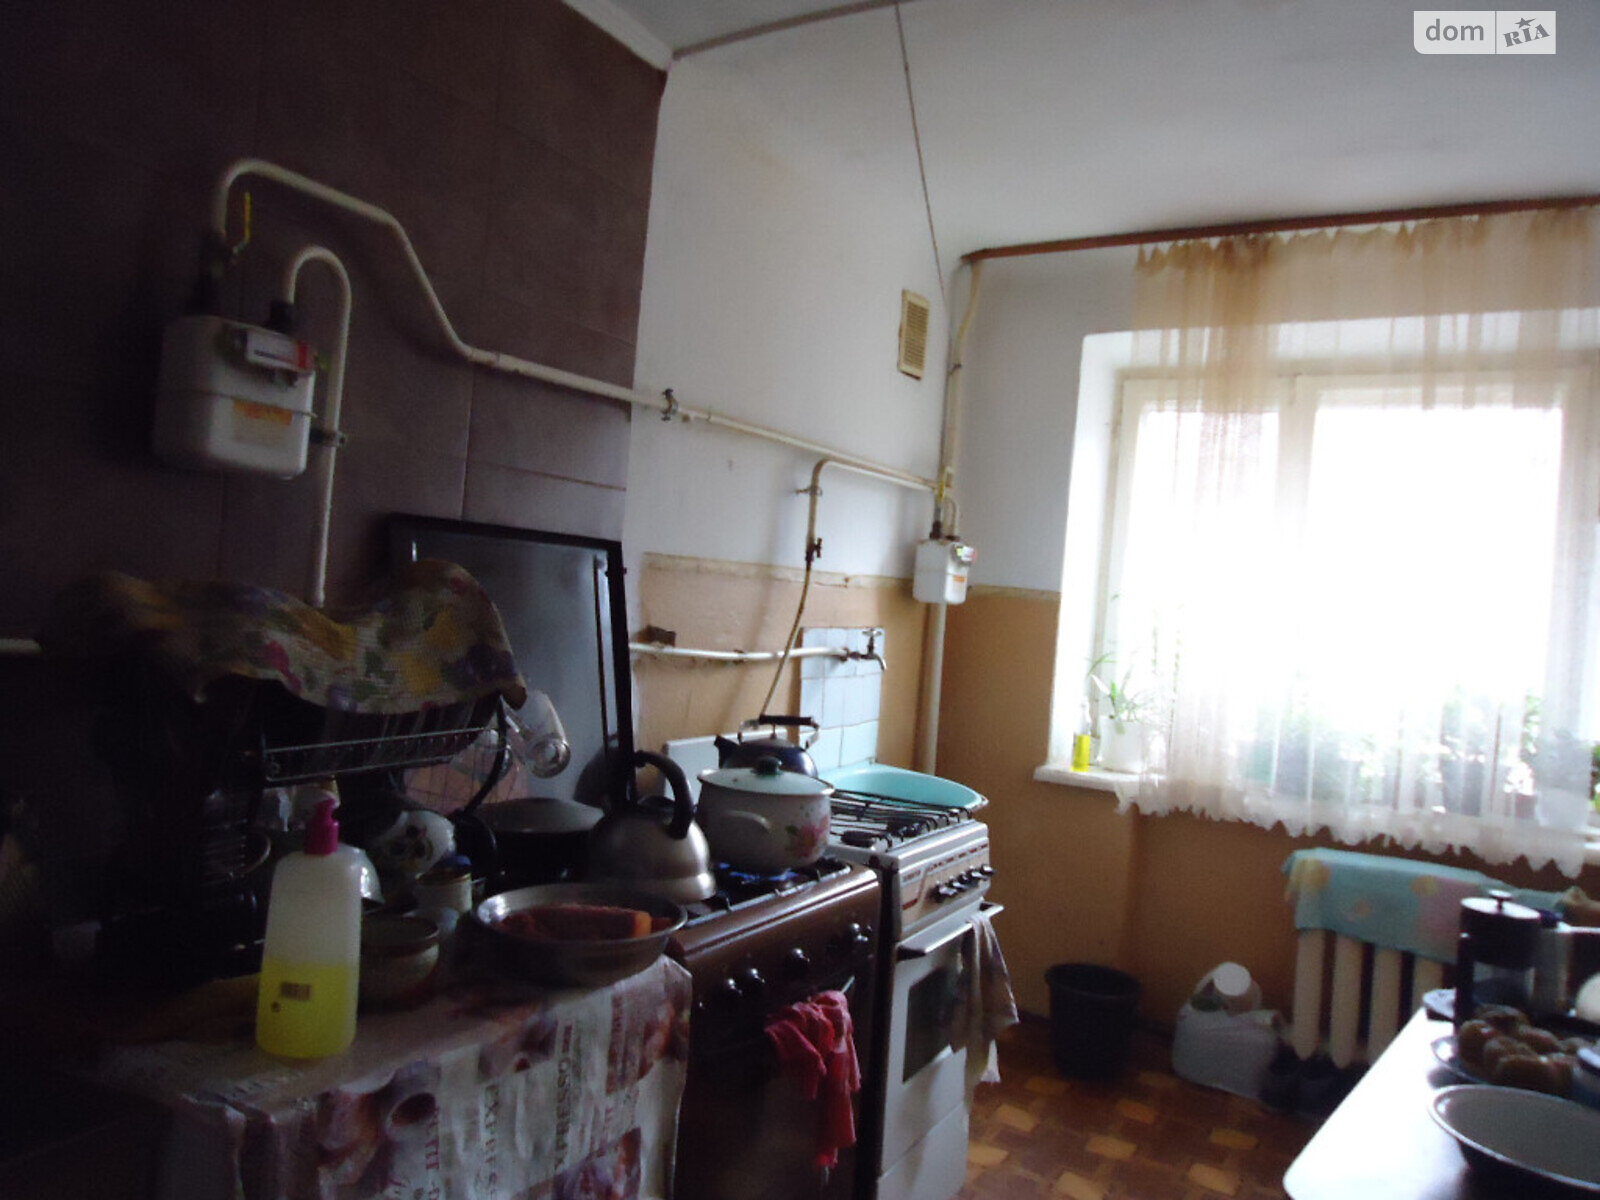 Кімната в Миколаєві на вул. Космонавтів 30 в районі ЮТЗ на продаж фото 1